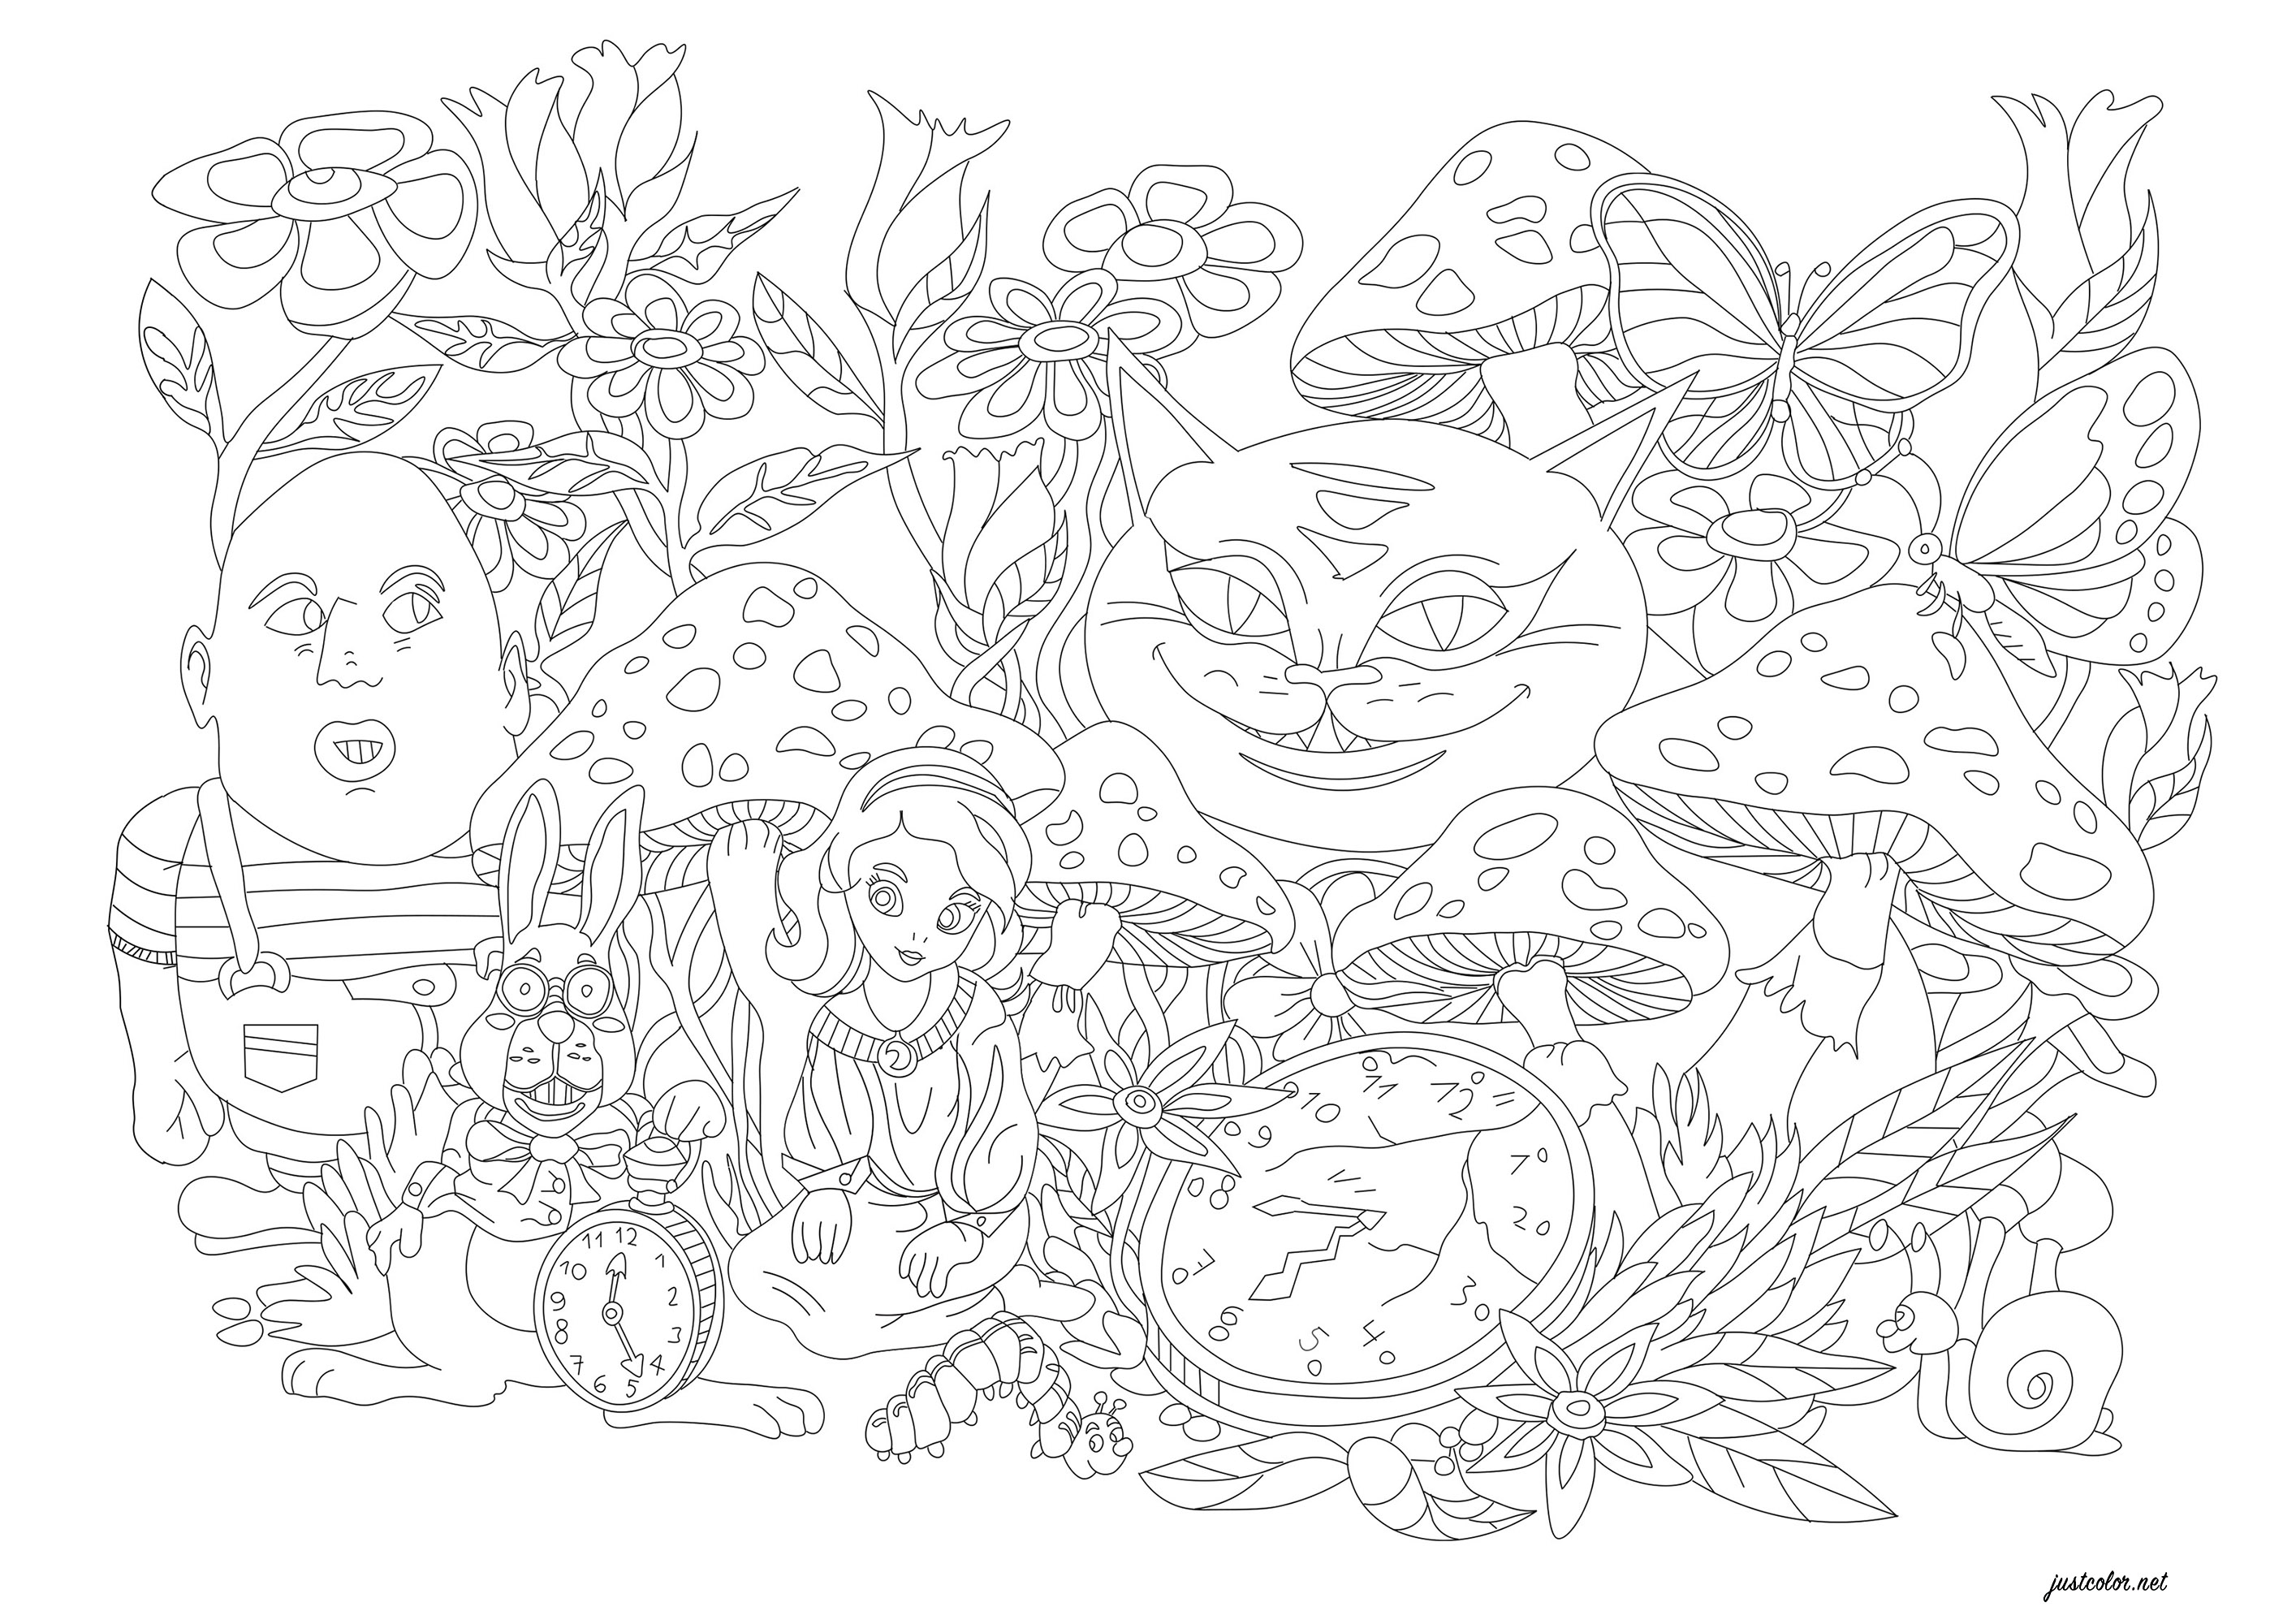 Une illustration à colorier en référence au livre « Les Aventures d'Alice au pays des merveilles ». Il s'agit d'un roman anglais publié en 1865 par Lewis Carroll. A colorier : des fleurs fantastiques, des monstres, le lapin, des montres, un escargot, des papillons et la merveilleuse Alice, Artiste : Morgan